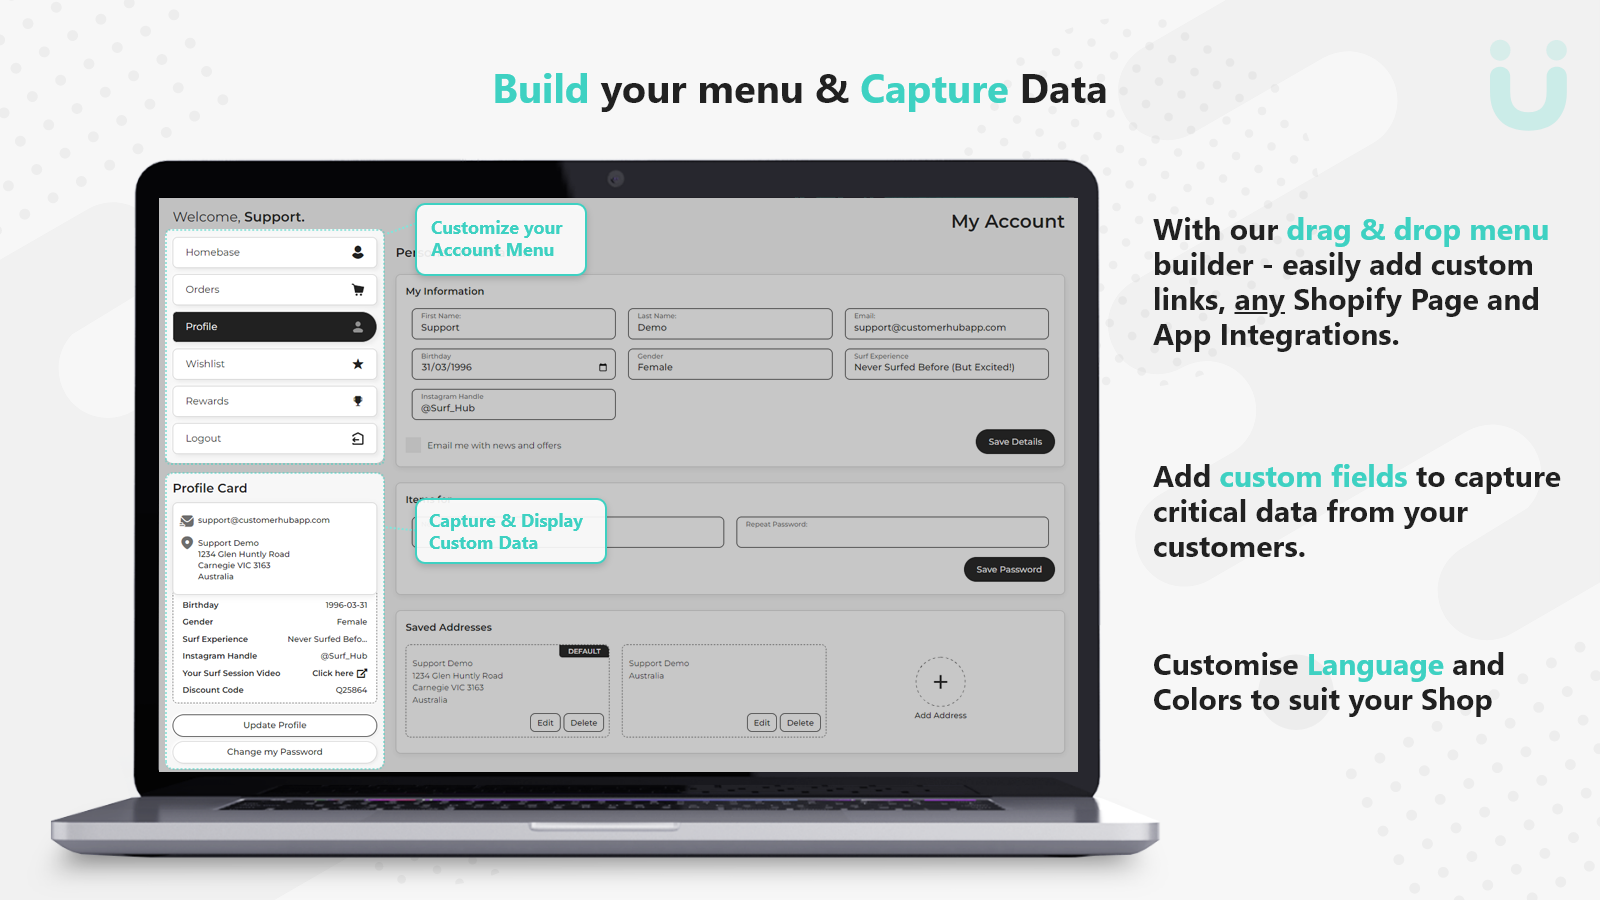 Build your menu & Capture your Data